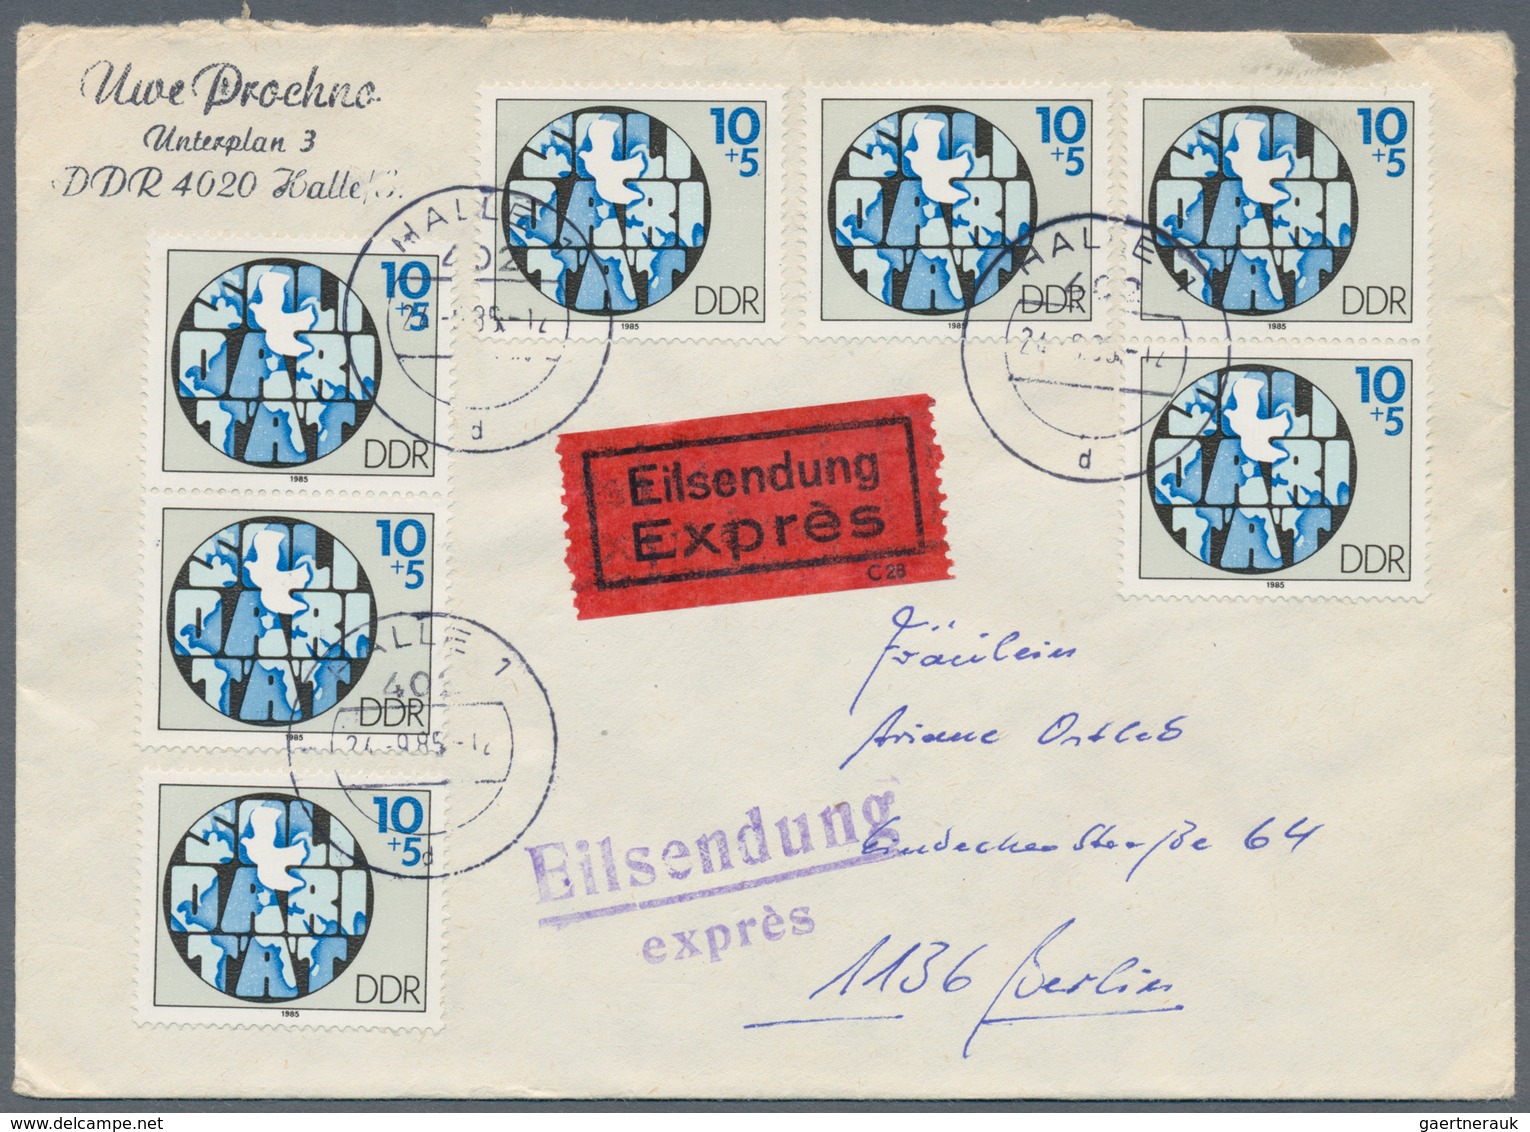 DDR: 1949/2019, umfassende Sammlung von ca. 2.180 Briefen und Karten ab etwas SBZ Allg.Ausgabe, auge